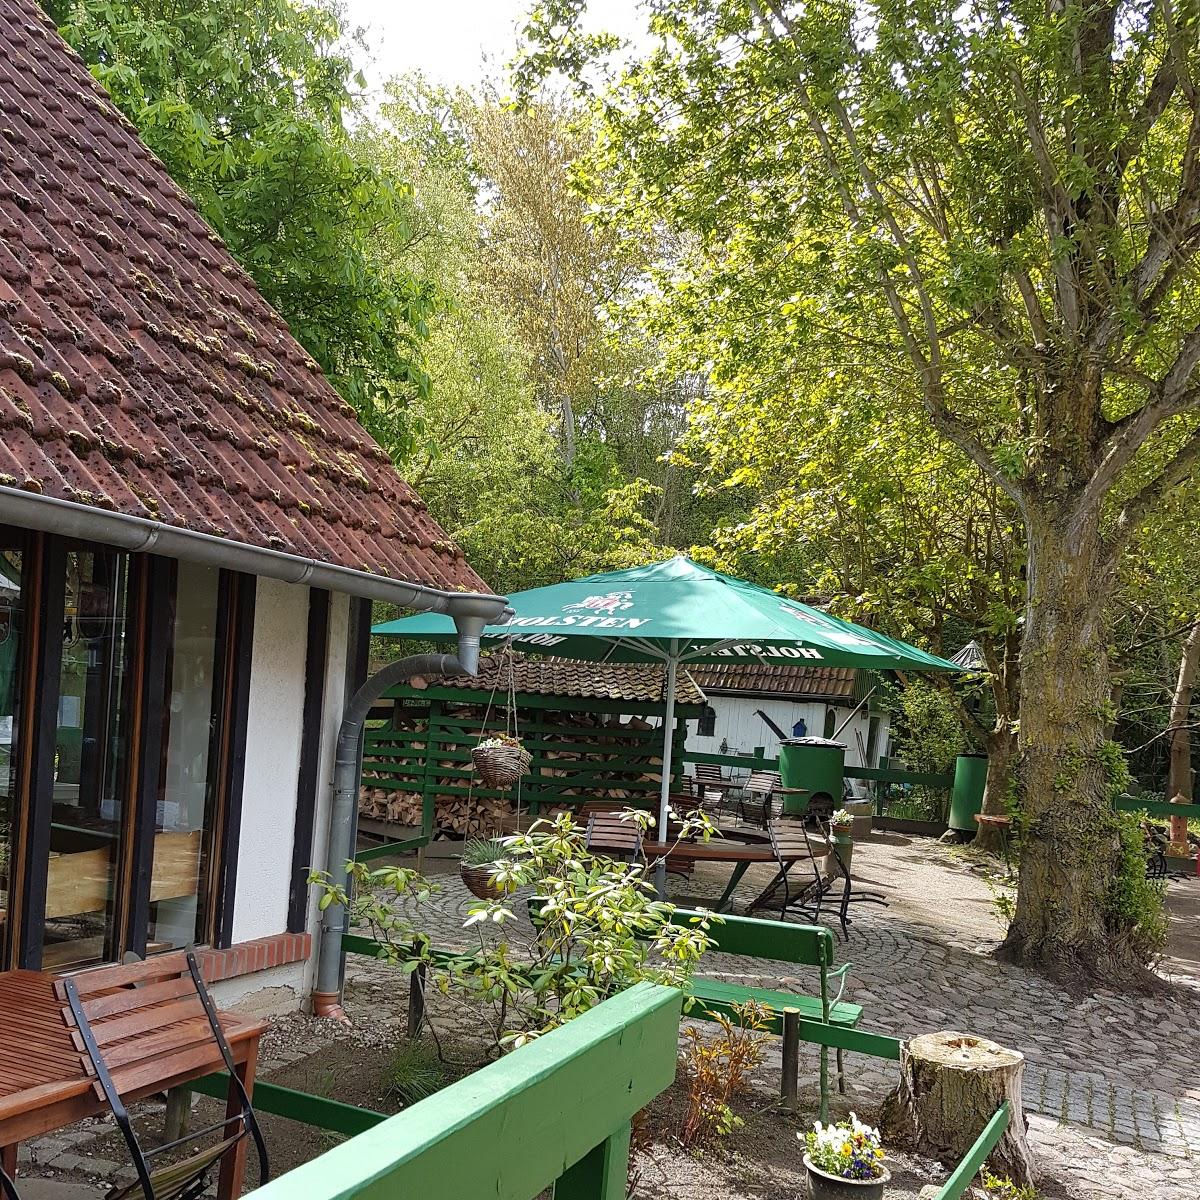 Restaurant "Fisch-Hütte" in  Heiligenhafen